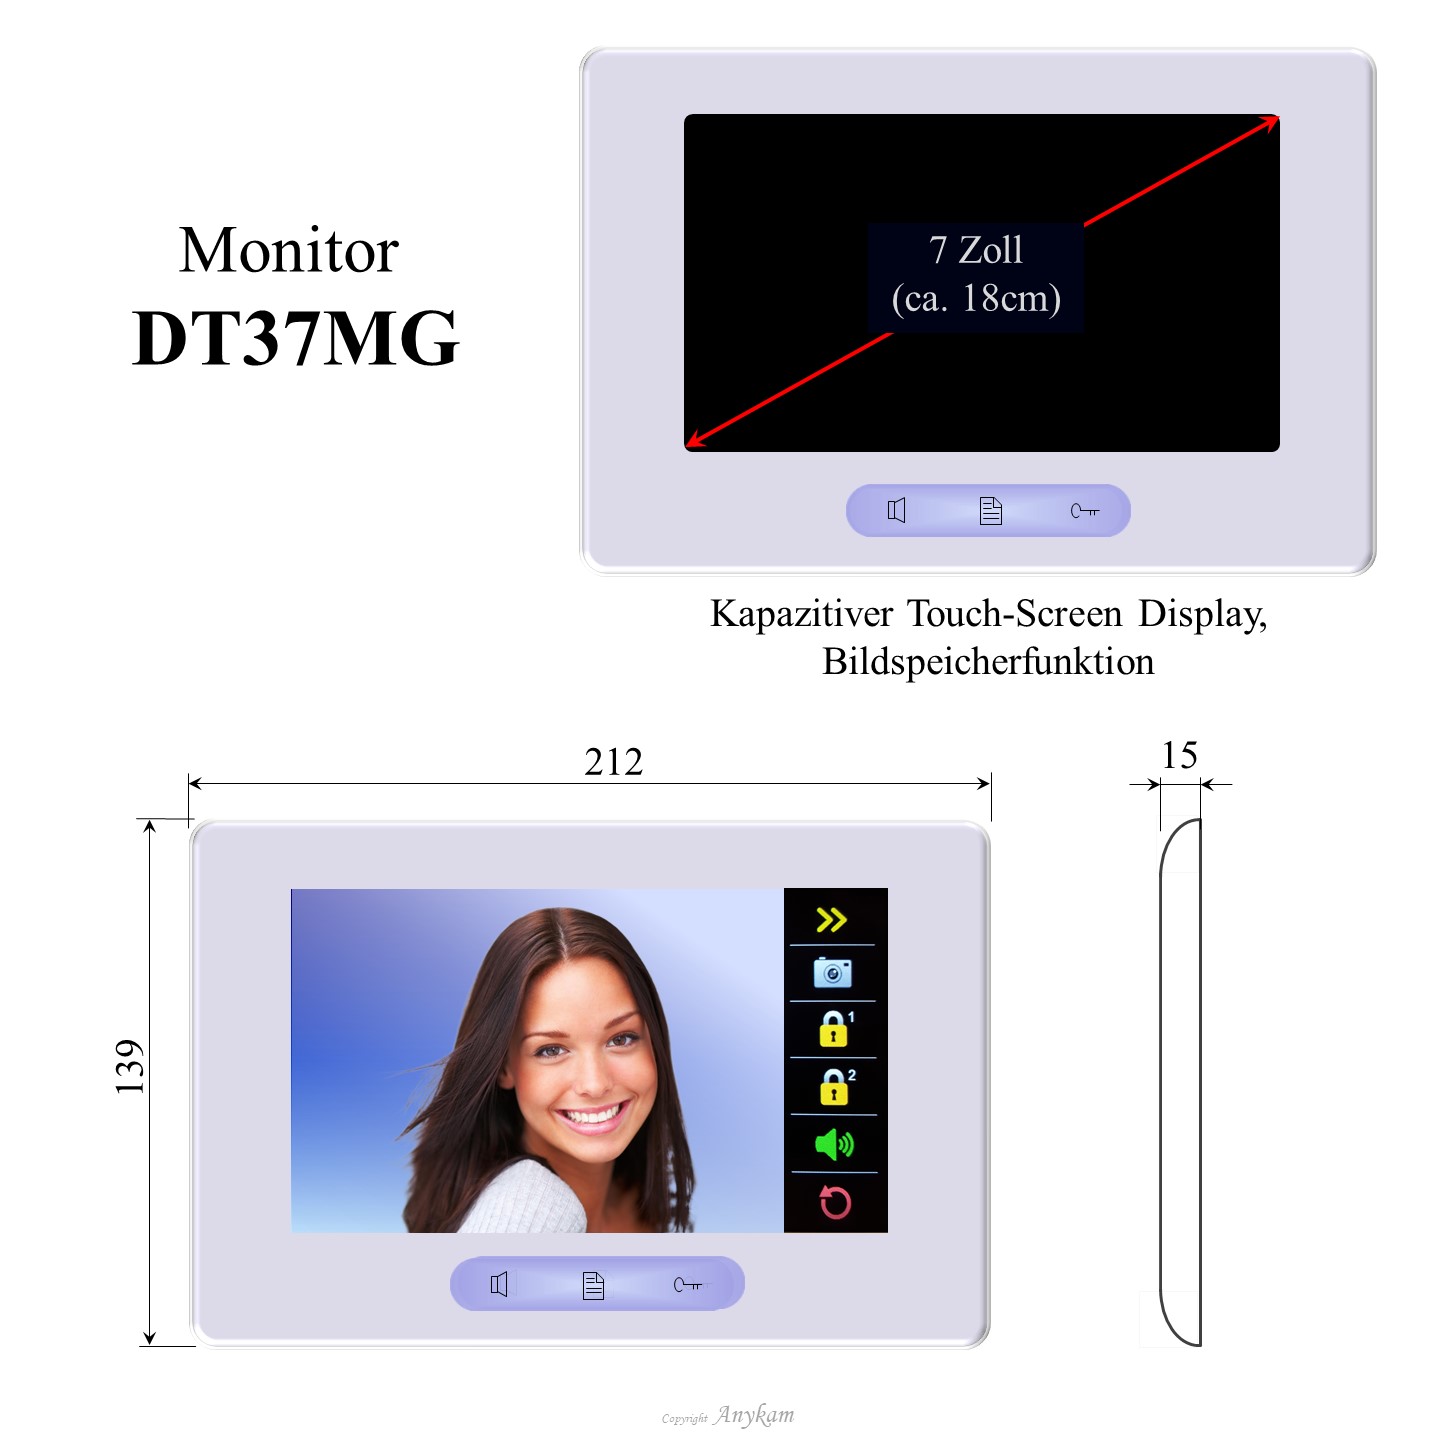 Monitor DT37MG, Innenstation der Videosprechanlage mit 2Draht Technik